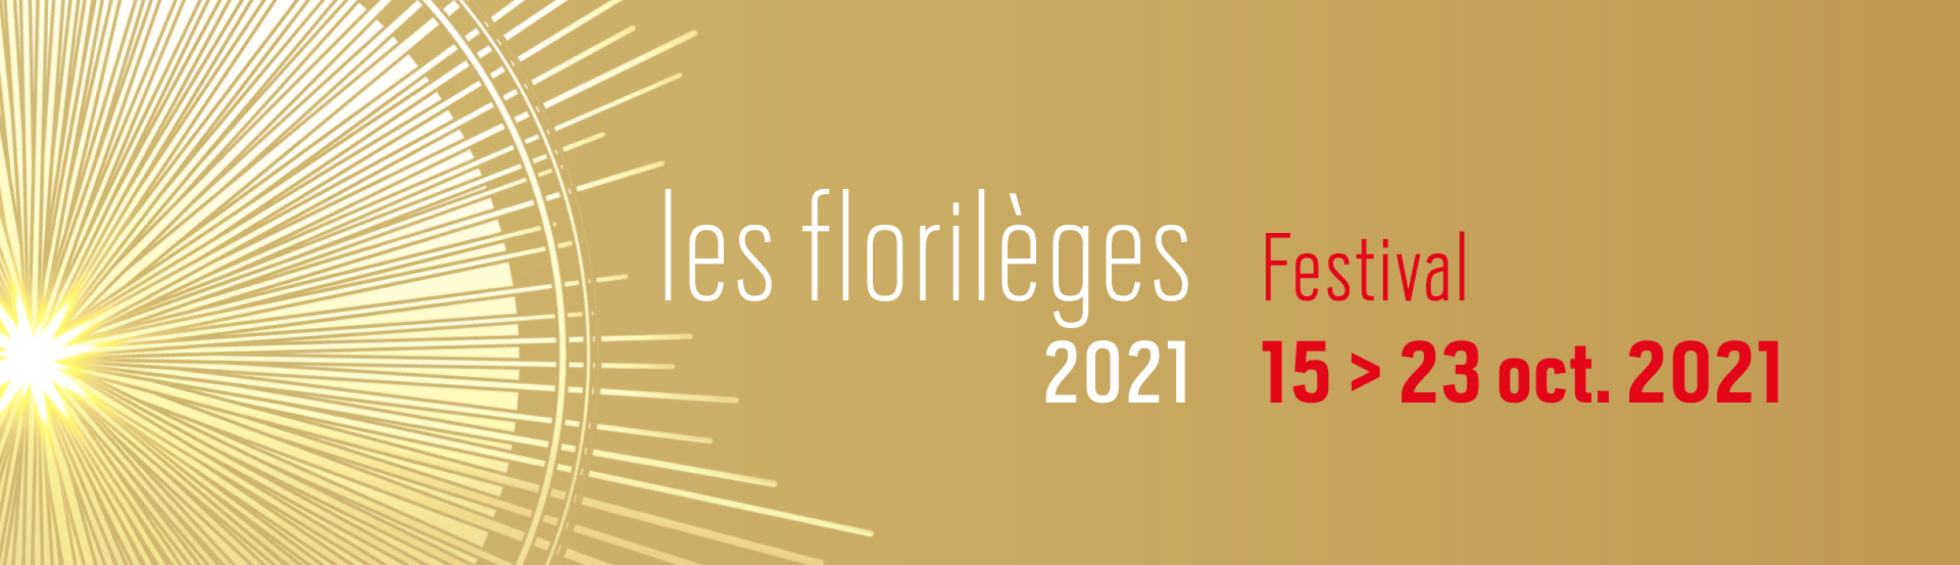 Les florilèges 2021